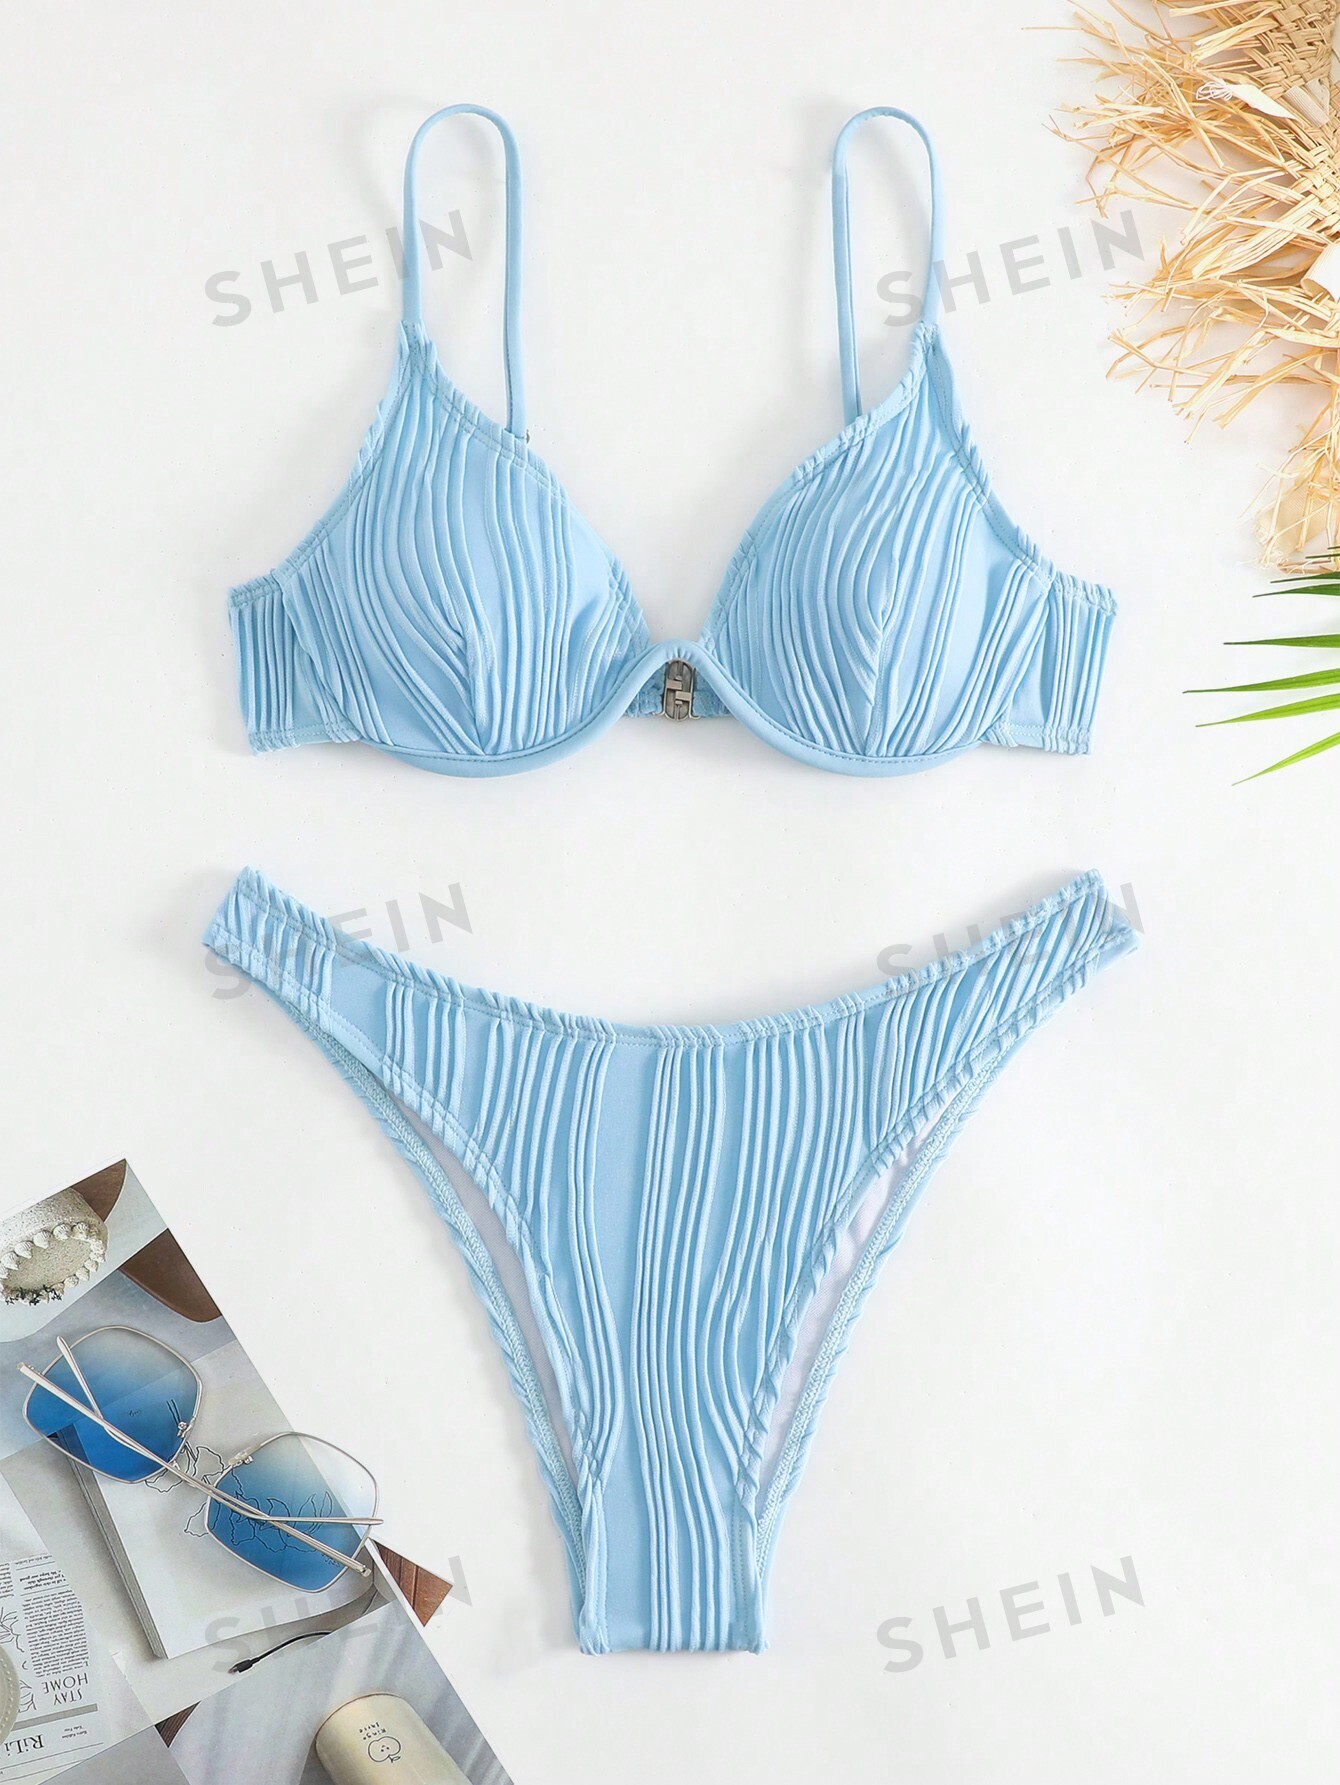 SHEIN Swim Basics Однотонный текстурированный раздельный купальник на косточках, голубые новинка 2021 соблазнительное бикини однотонный женский купальник комплект бикини пуш ап бразильский купальник летняя пляжная одежда куп